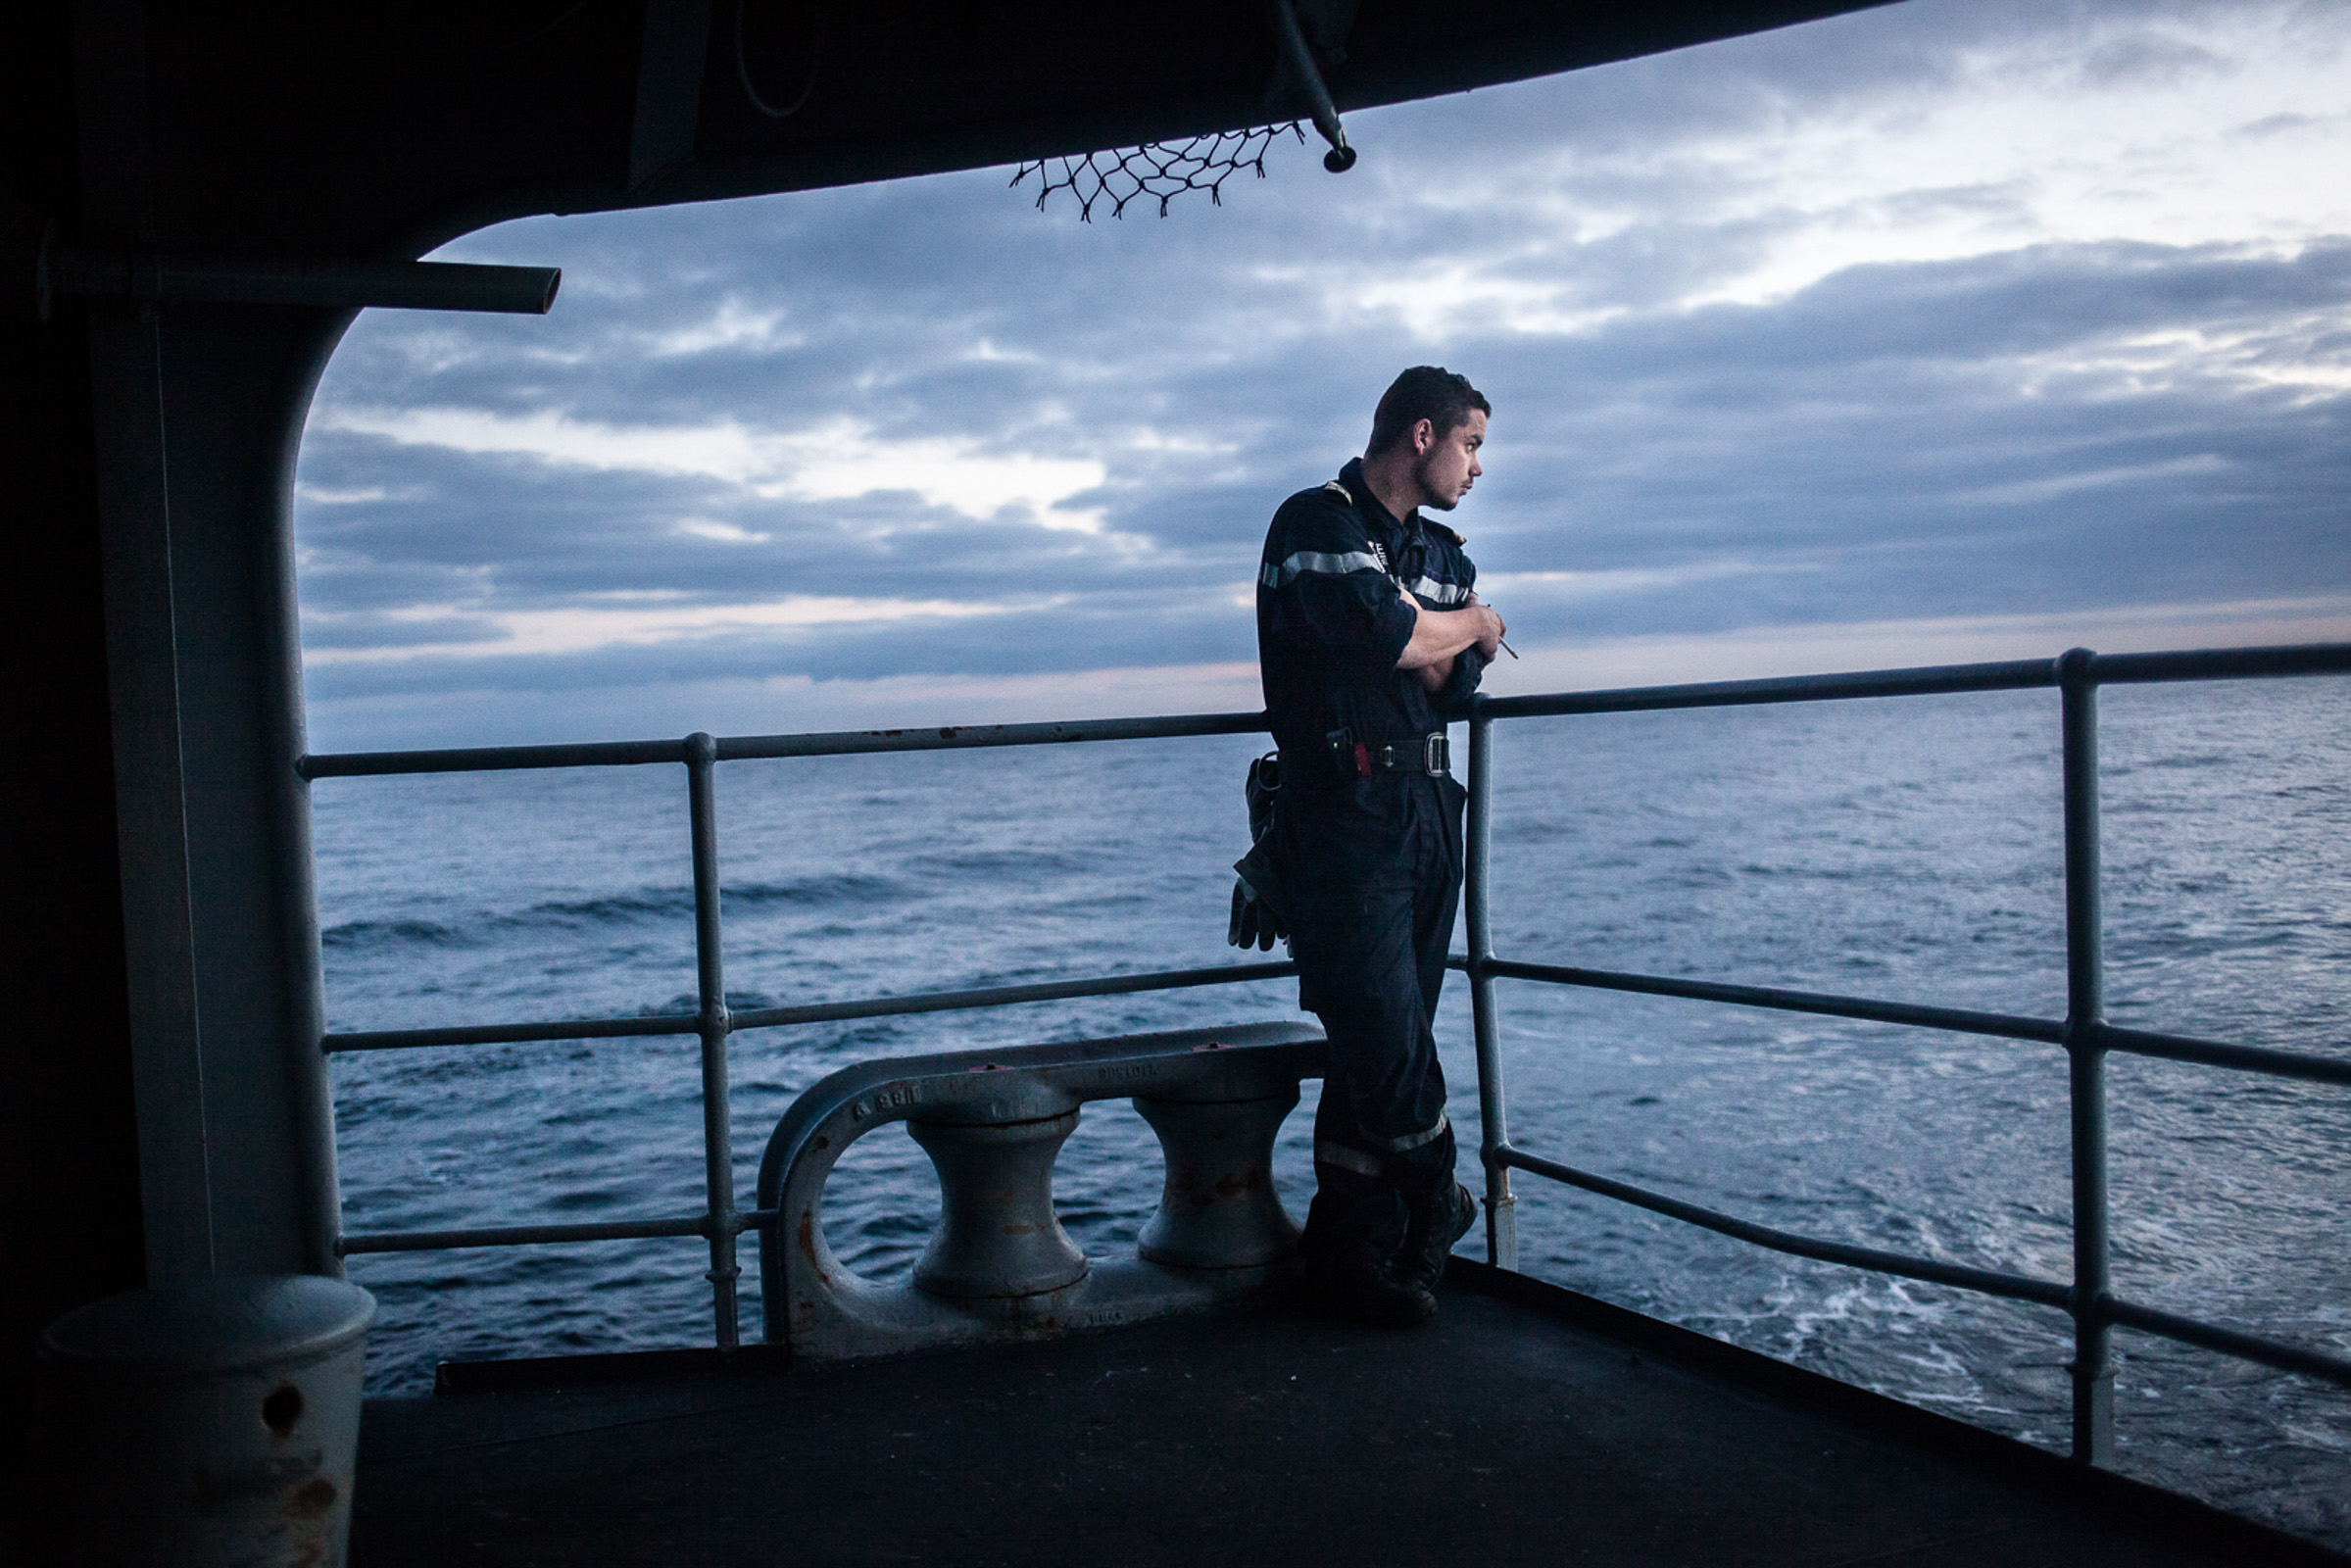 Mer méditerrannée, 02.12.2015. Pause cigarette pour un membre de l'équipage, sur la plage arrière de la frégate le "Jean Bart", lors d'exercices interarmées en Méditerrannée.